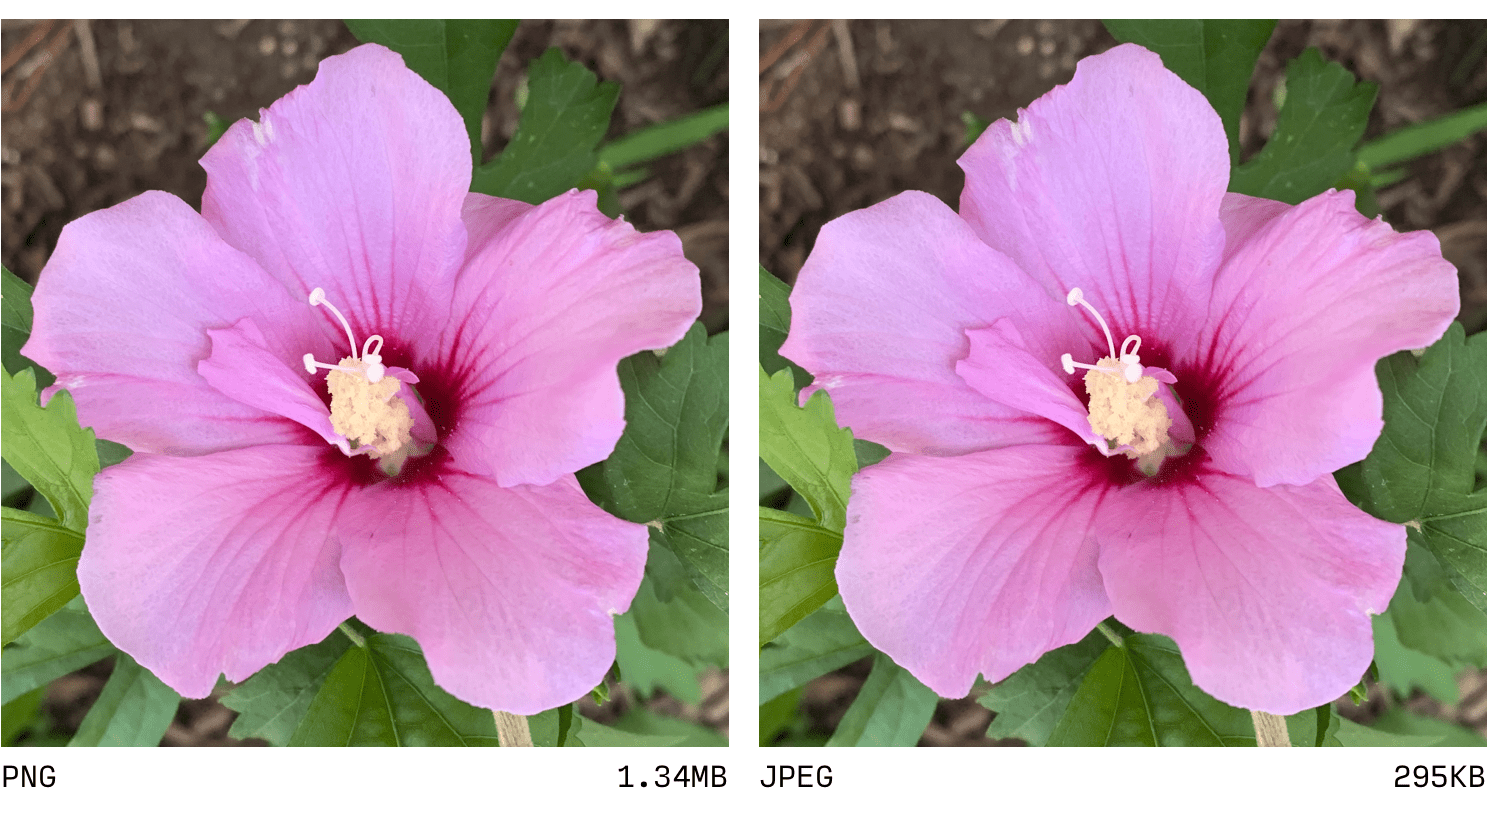 Comparación entre JPEG y PNG